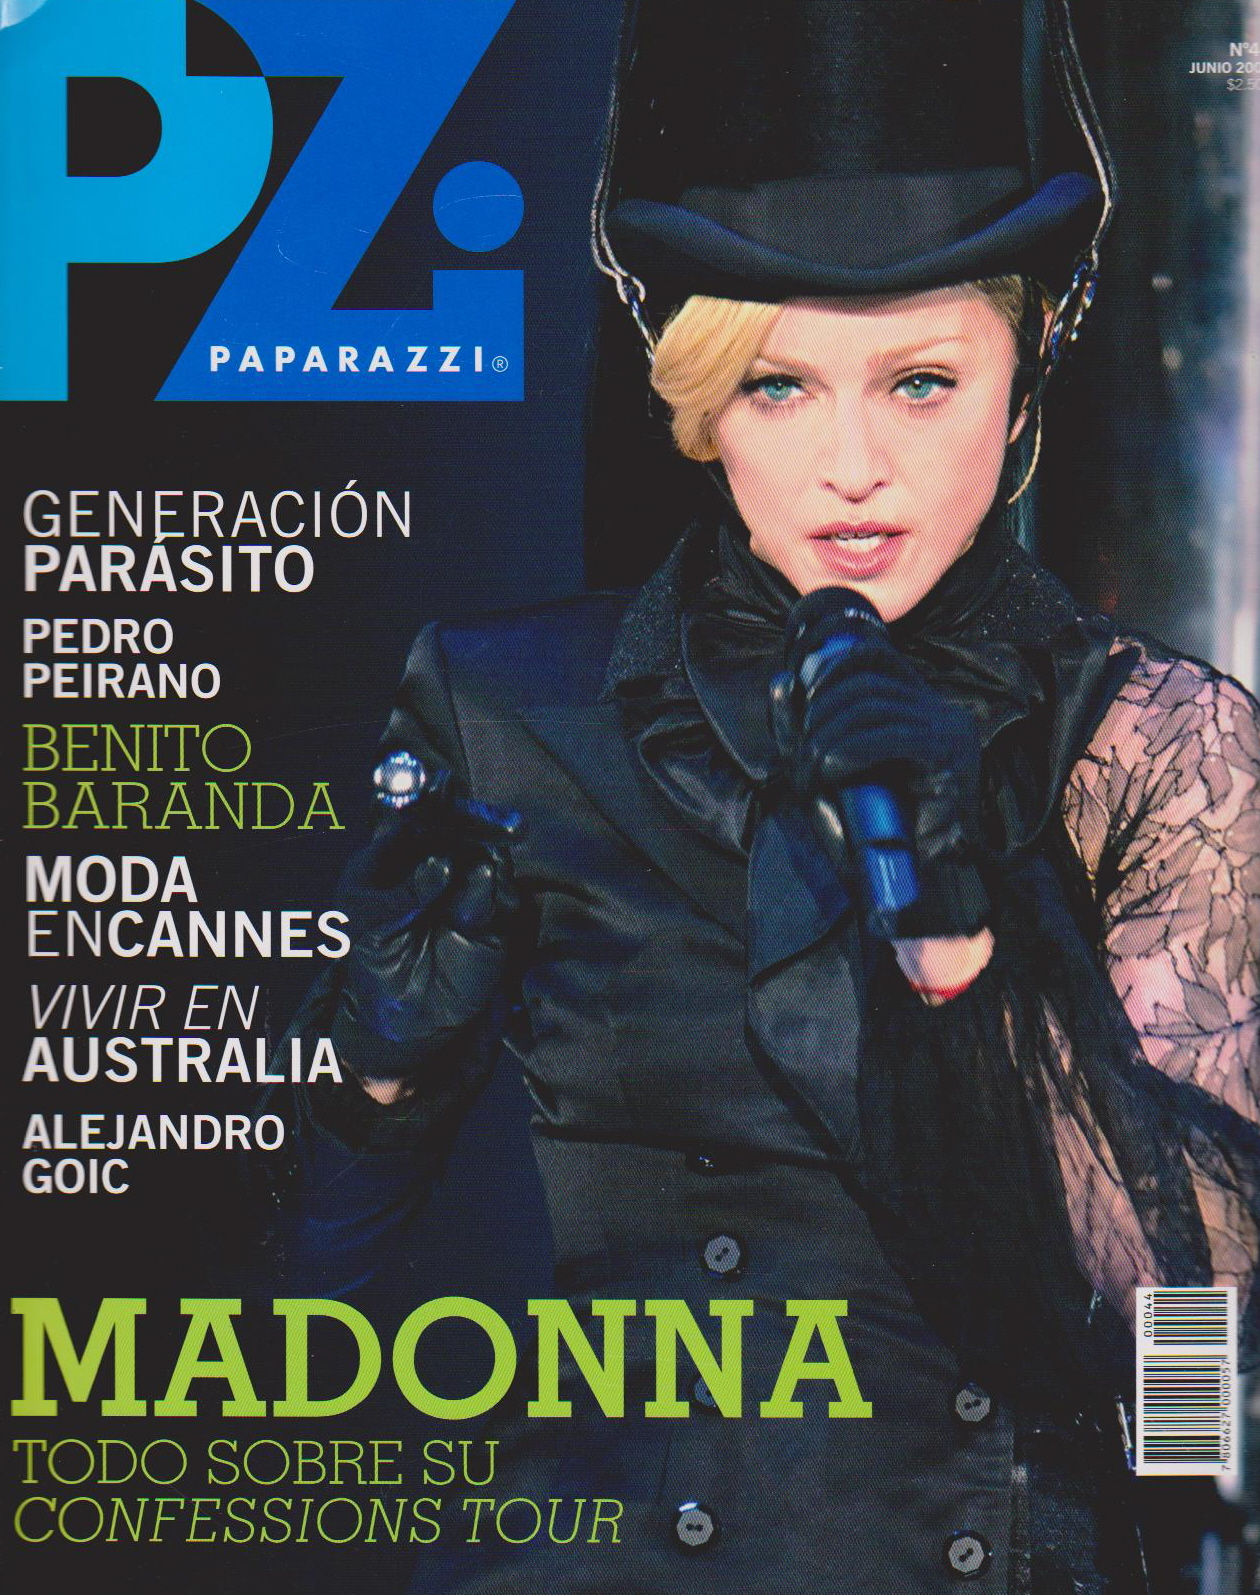 Madonna 2006. Madonna Confessions Tour. Paparazzi 2006.